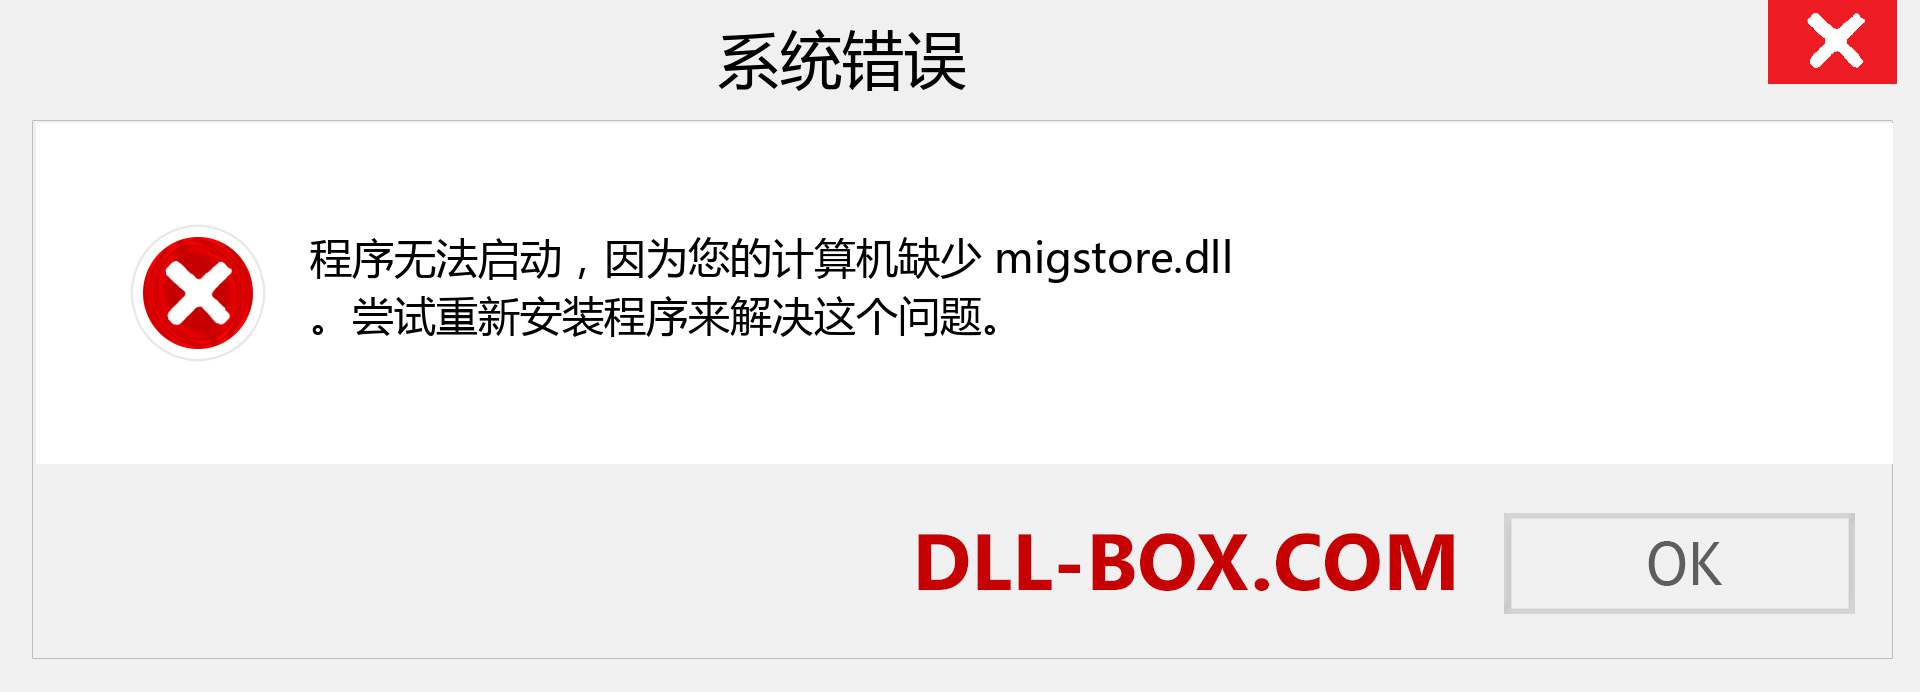 migstore.dll 文件丢失？。 适用于 Windows 7、8、10 的下载 - 修复 Windows、照片、图像上的 migstore dll 丢失错误